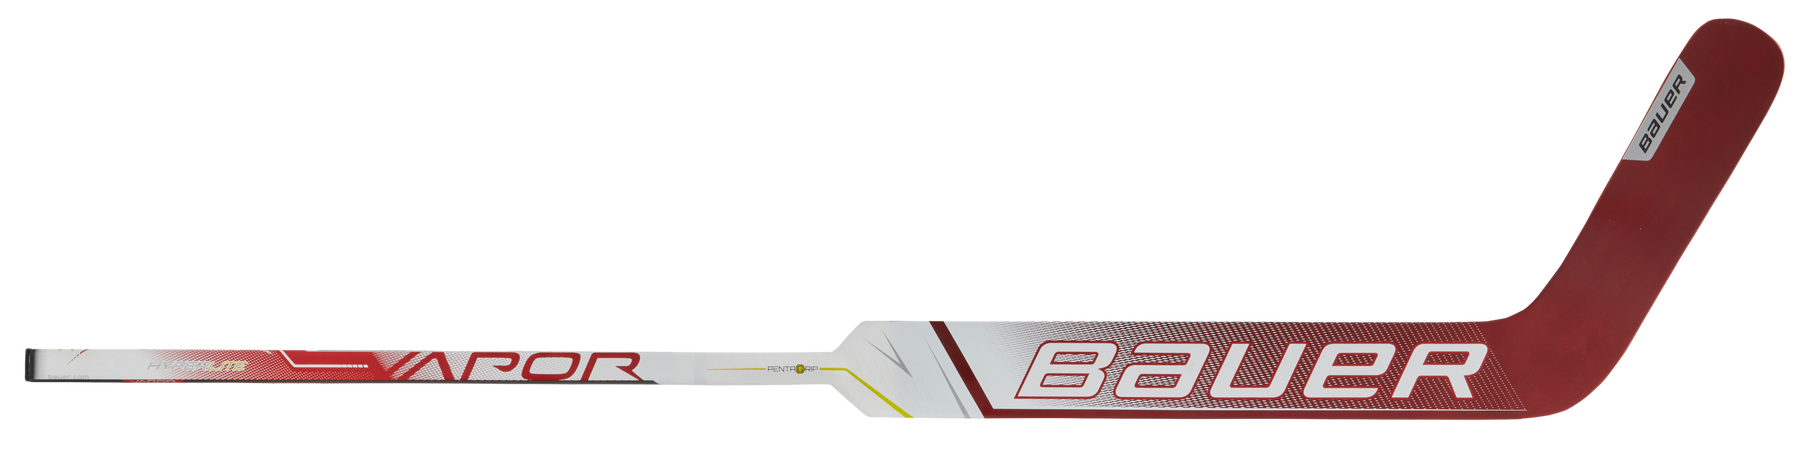 Bauer Vapor Hyperlite Senior Goalie Stick (White/Red)